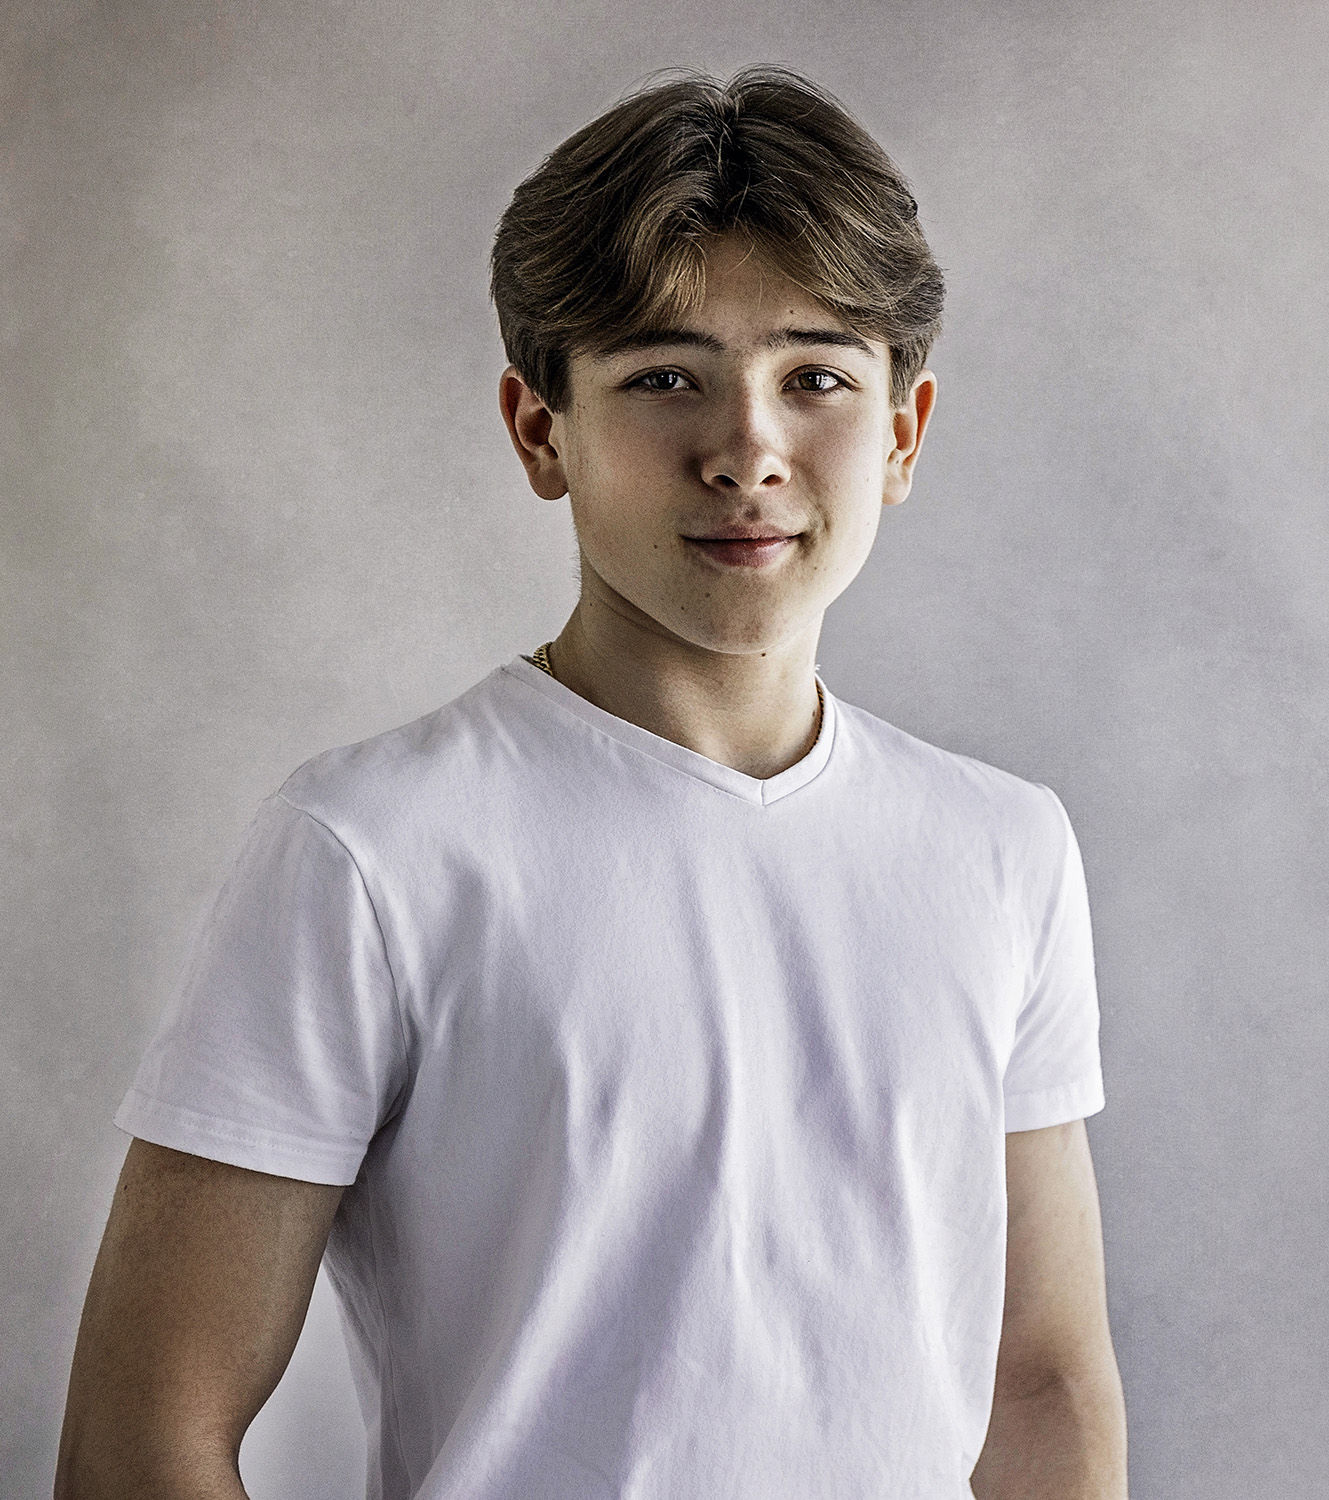 tenåringsgutt med brune øyne og i hvit t-skjorte